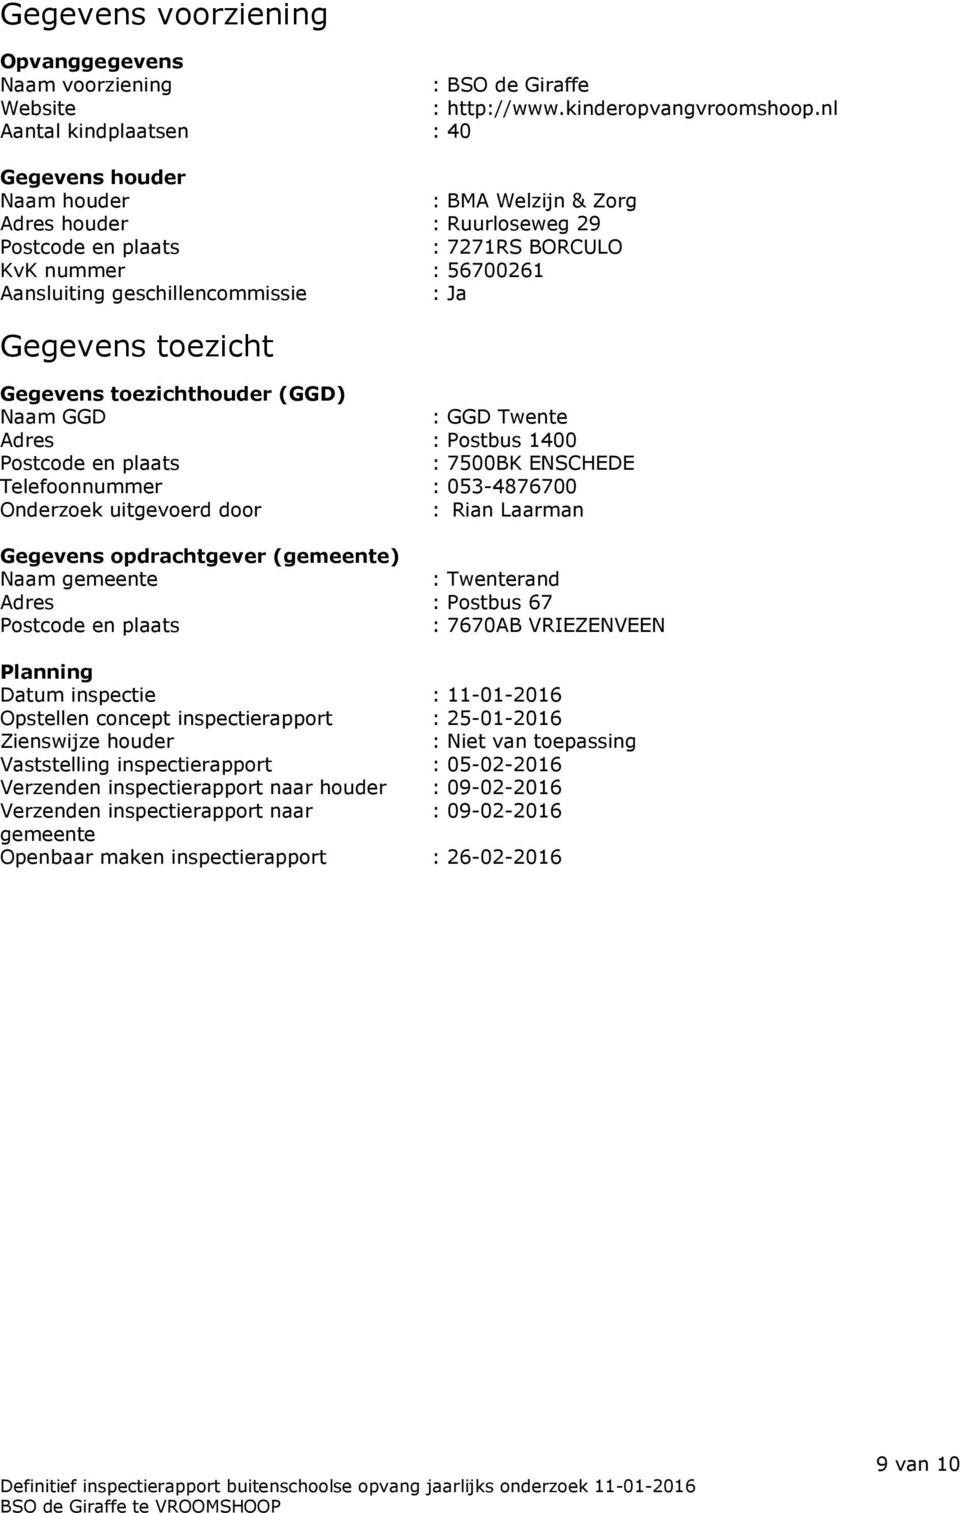 Ja Gegevens toezicht Gegevens toezichthouder (GGD) Naam GGD : GGD Twente Adres : Postbus 1400 Postcode en plaats : 7500BK ENSCHEDE Telefoonnummer : 053-4876700 Onderzoek uitgevoerd door : Rian